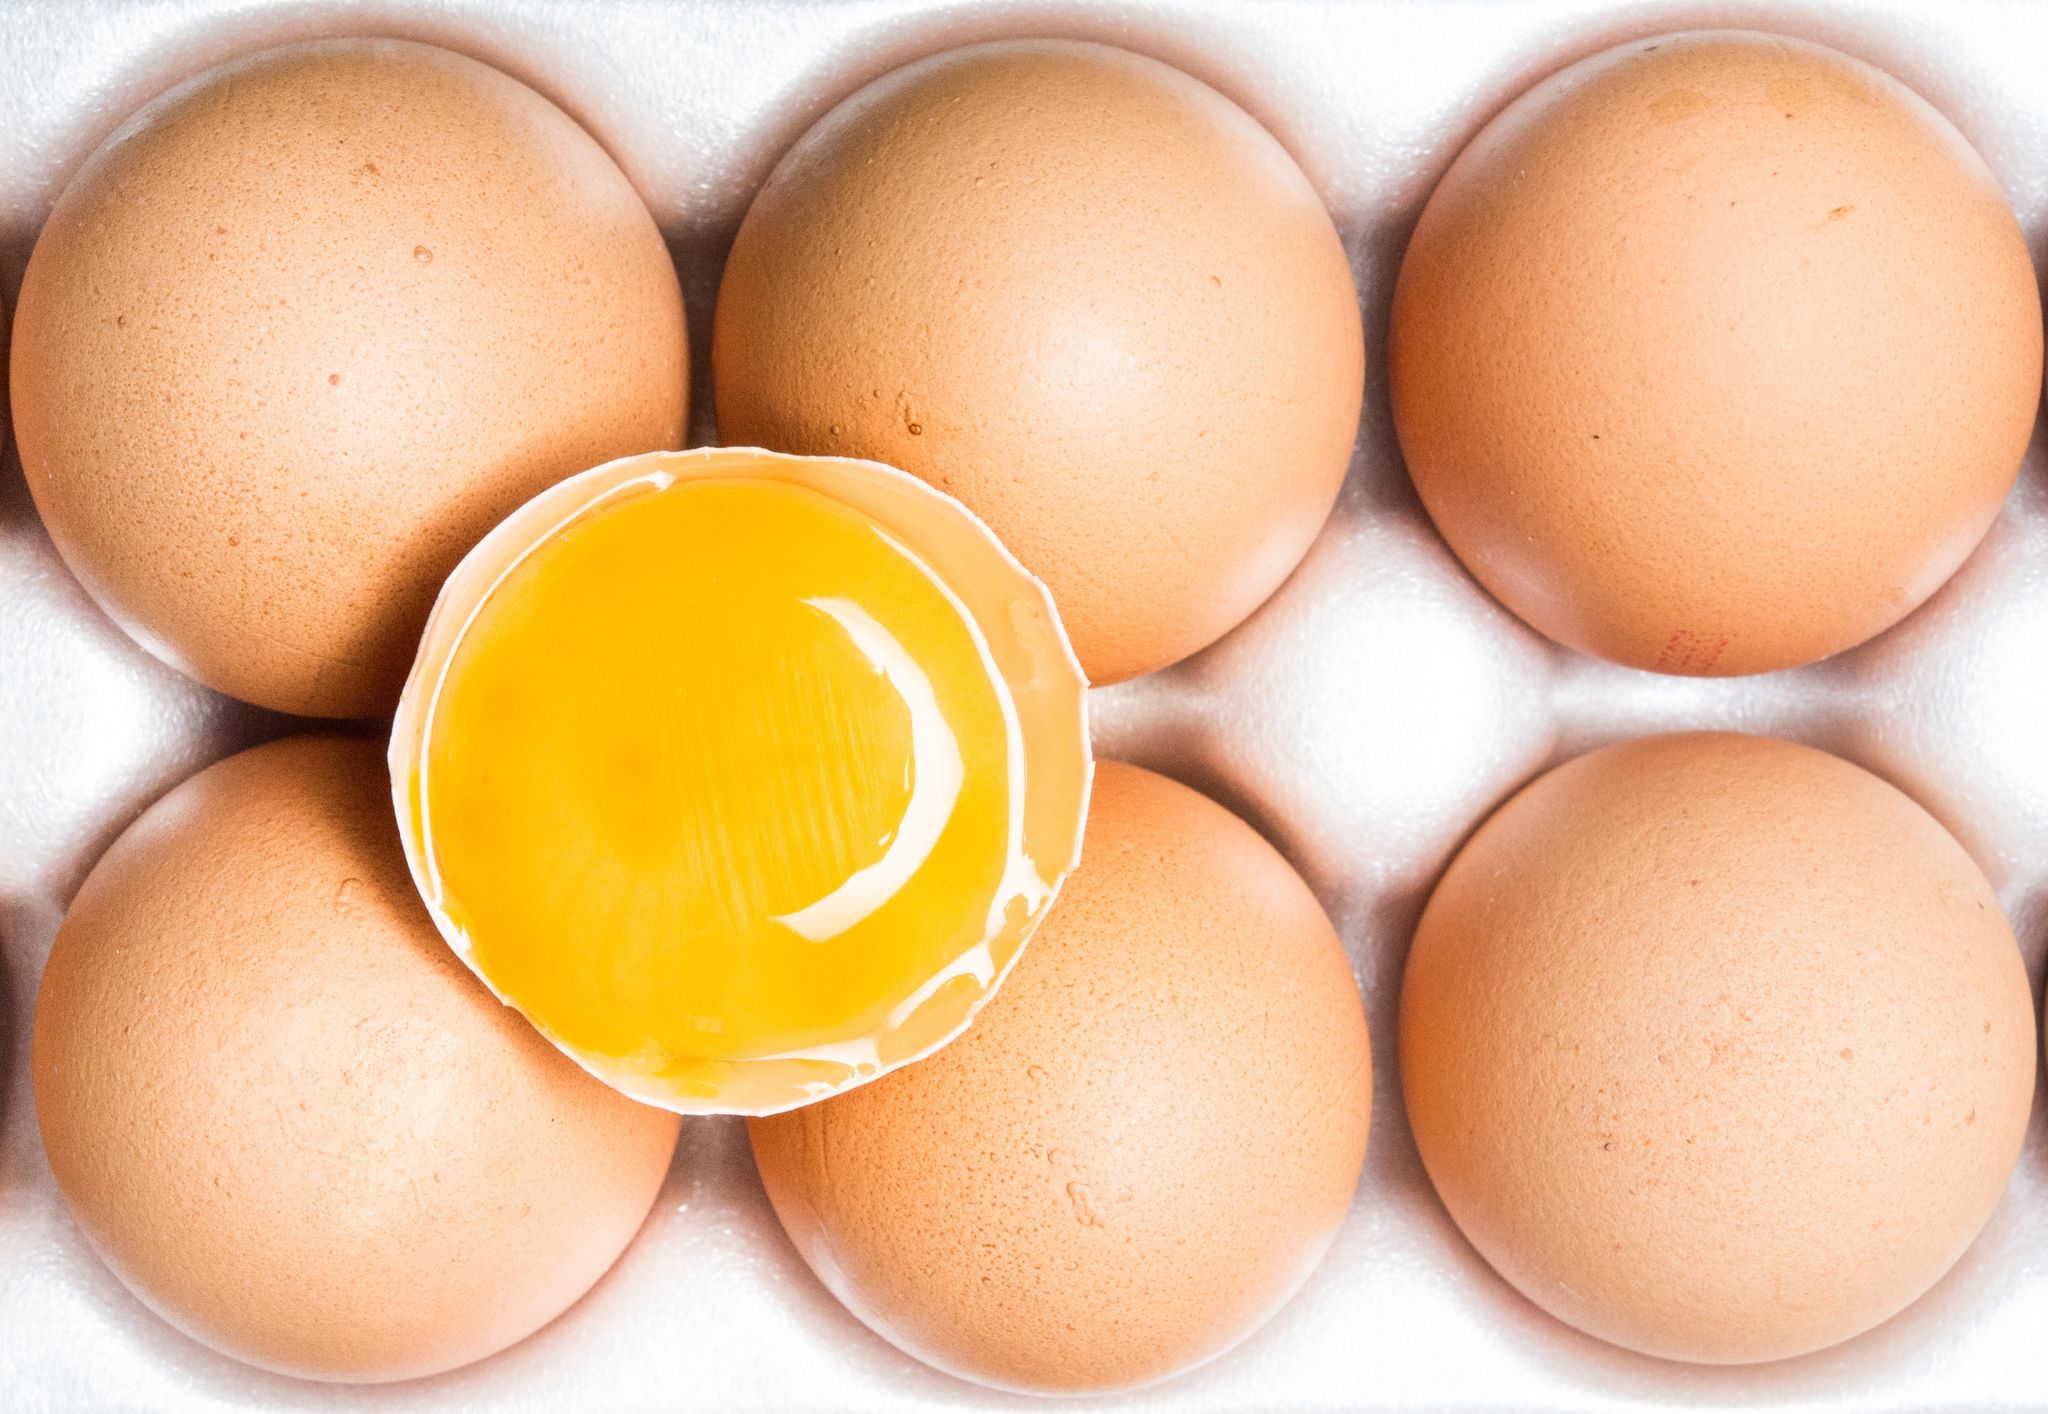 Fünf Eier-Marken erfüllten die «Öko-Test»-Kriterien am besten und erreichten das Prädikat «sehr gut». (zu dpa: «Eier im Öko-Test: 5 mal Bestnote, sonst Abzüge beim Tierwohl»)